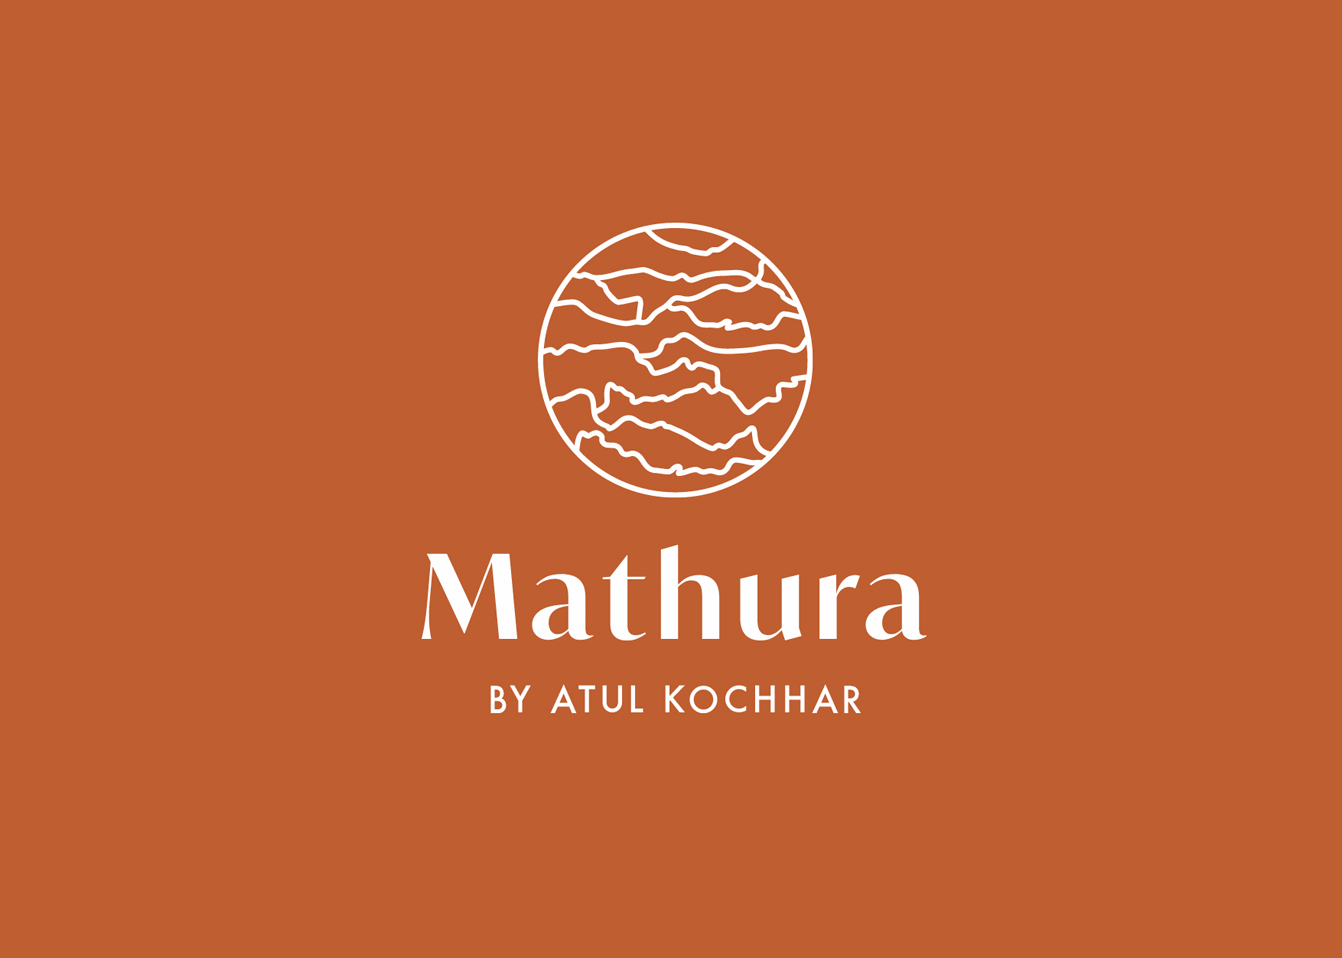 Mathura restaurant opening soon